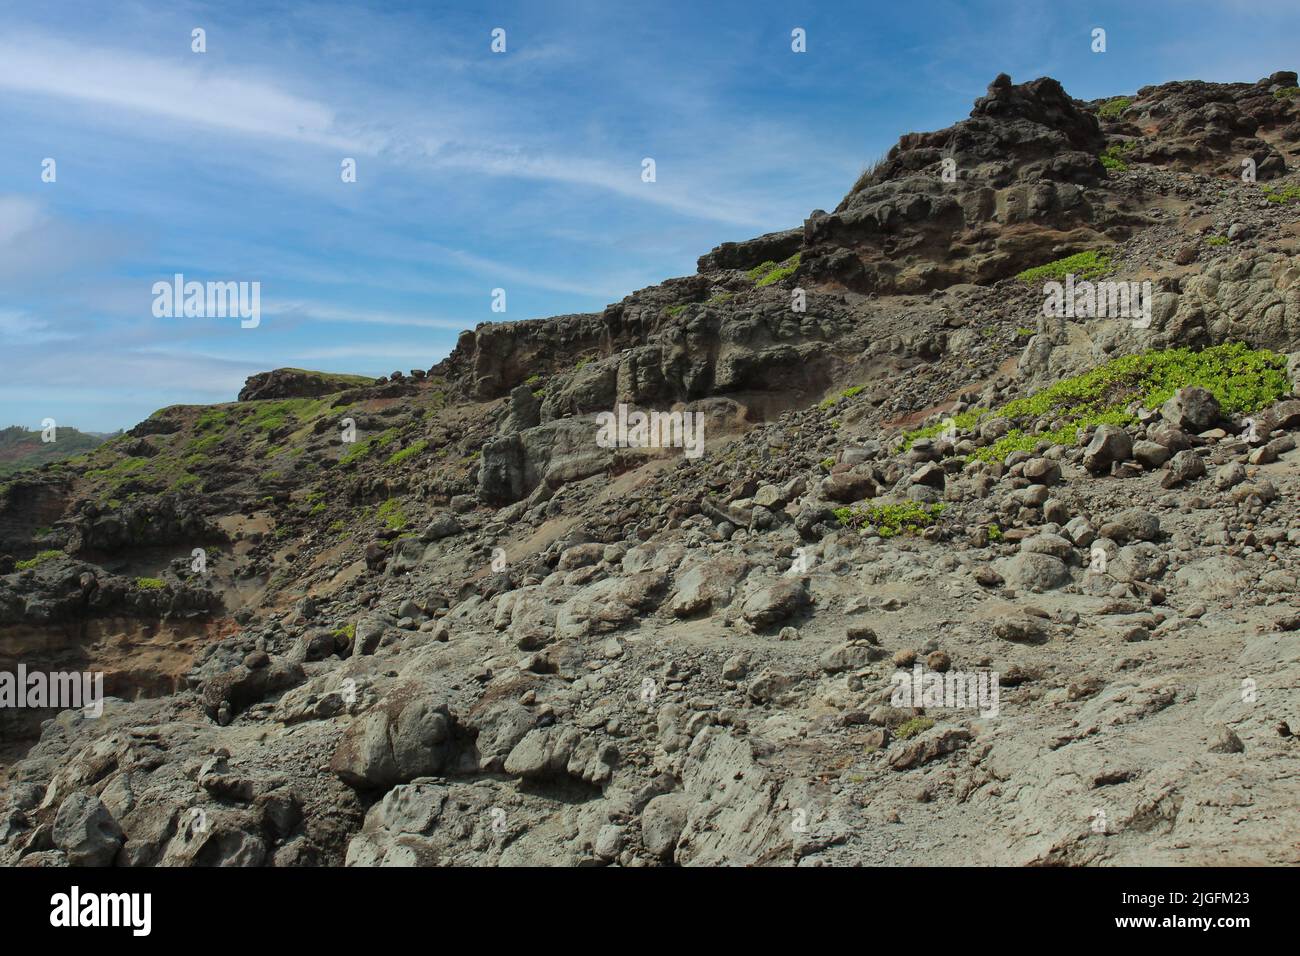 Ladera rocosa compuesta de rocas volcánicas, polvo, tierra y plantas de taccada Scaevola en Wailuku, Maui, Hawai, EE.UU Foto de stock